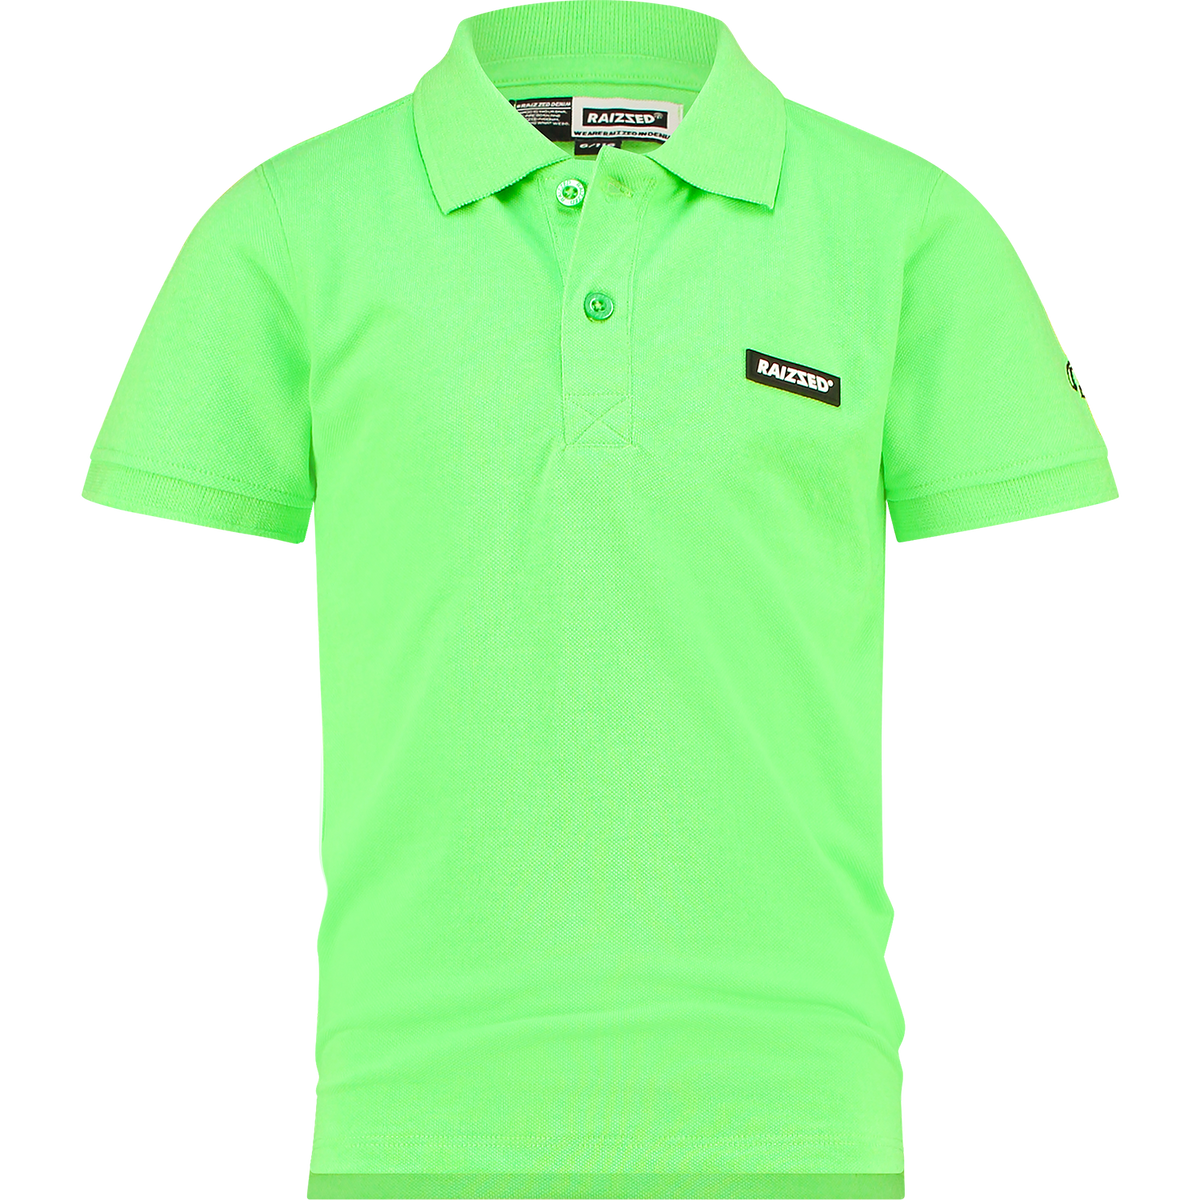 Jungen T-Shirt Poloshirt Kobe Neon Green